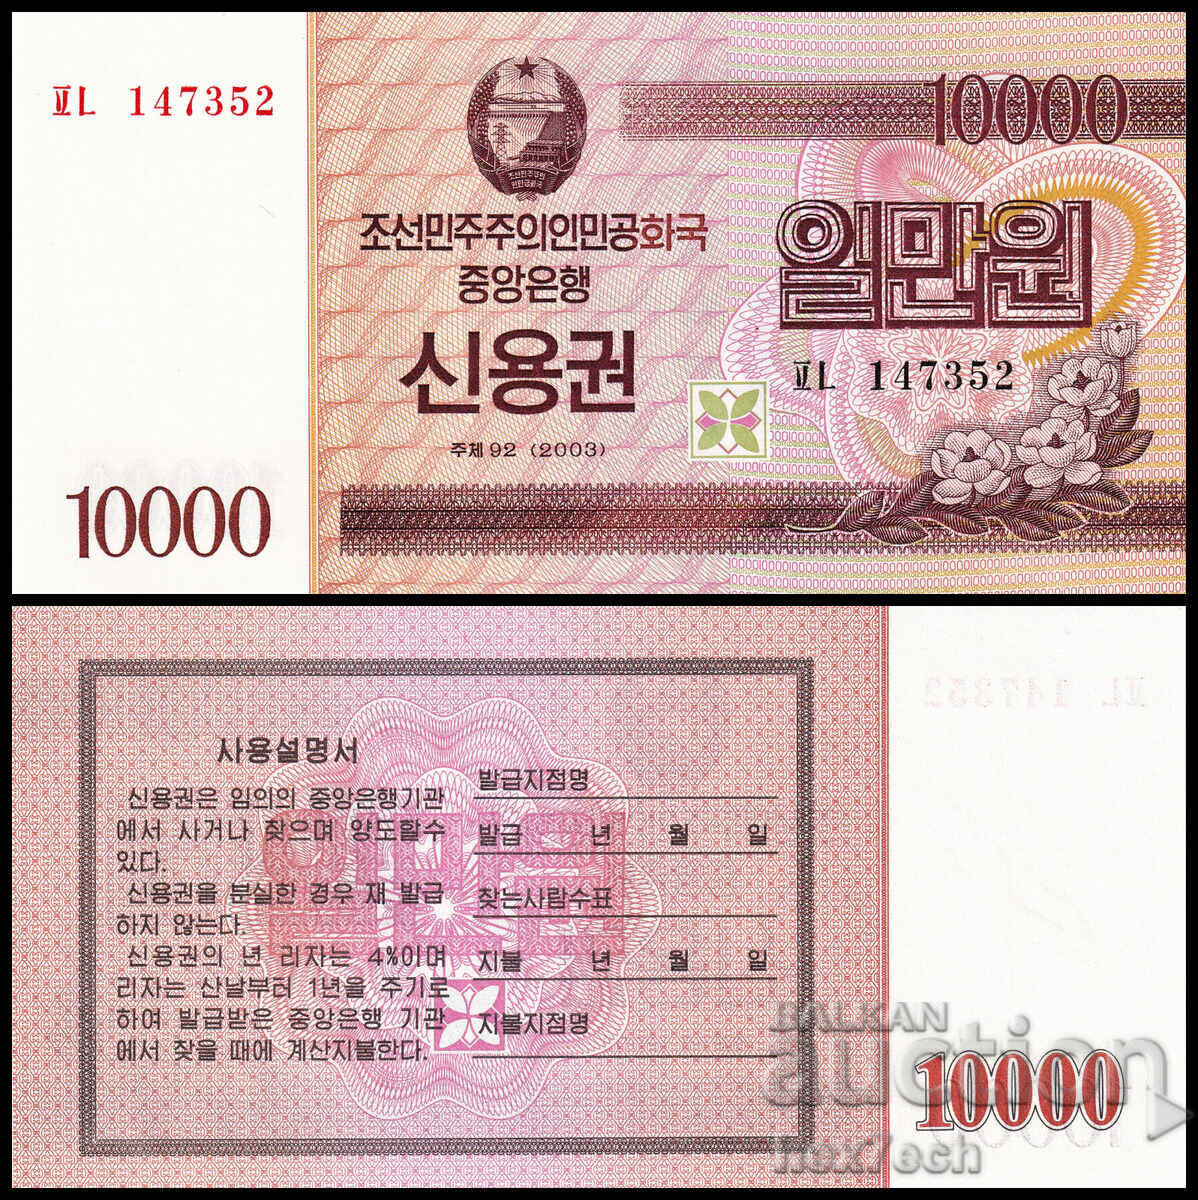 ❤️ ⭐ Северна Корея 2003 10000 вон UNC нова ⭐ ❤️